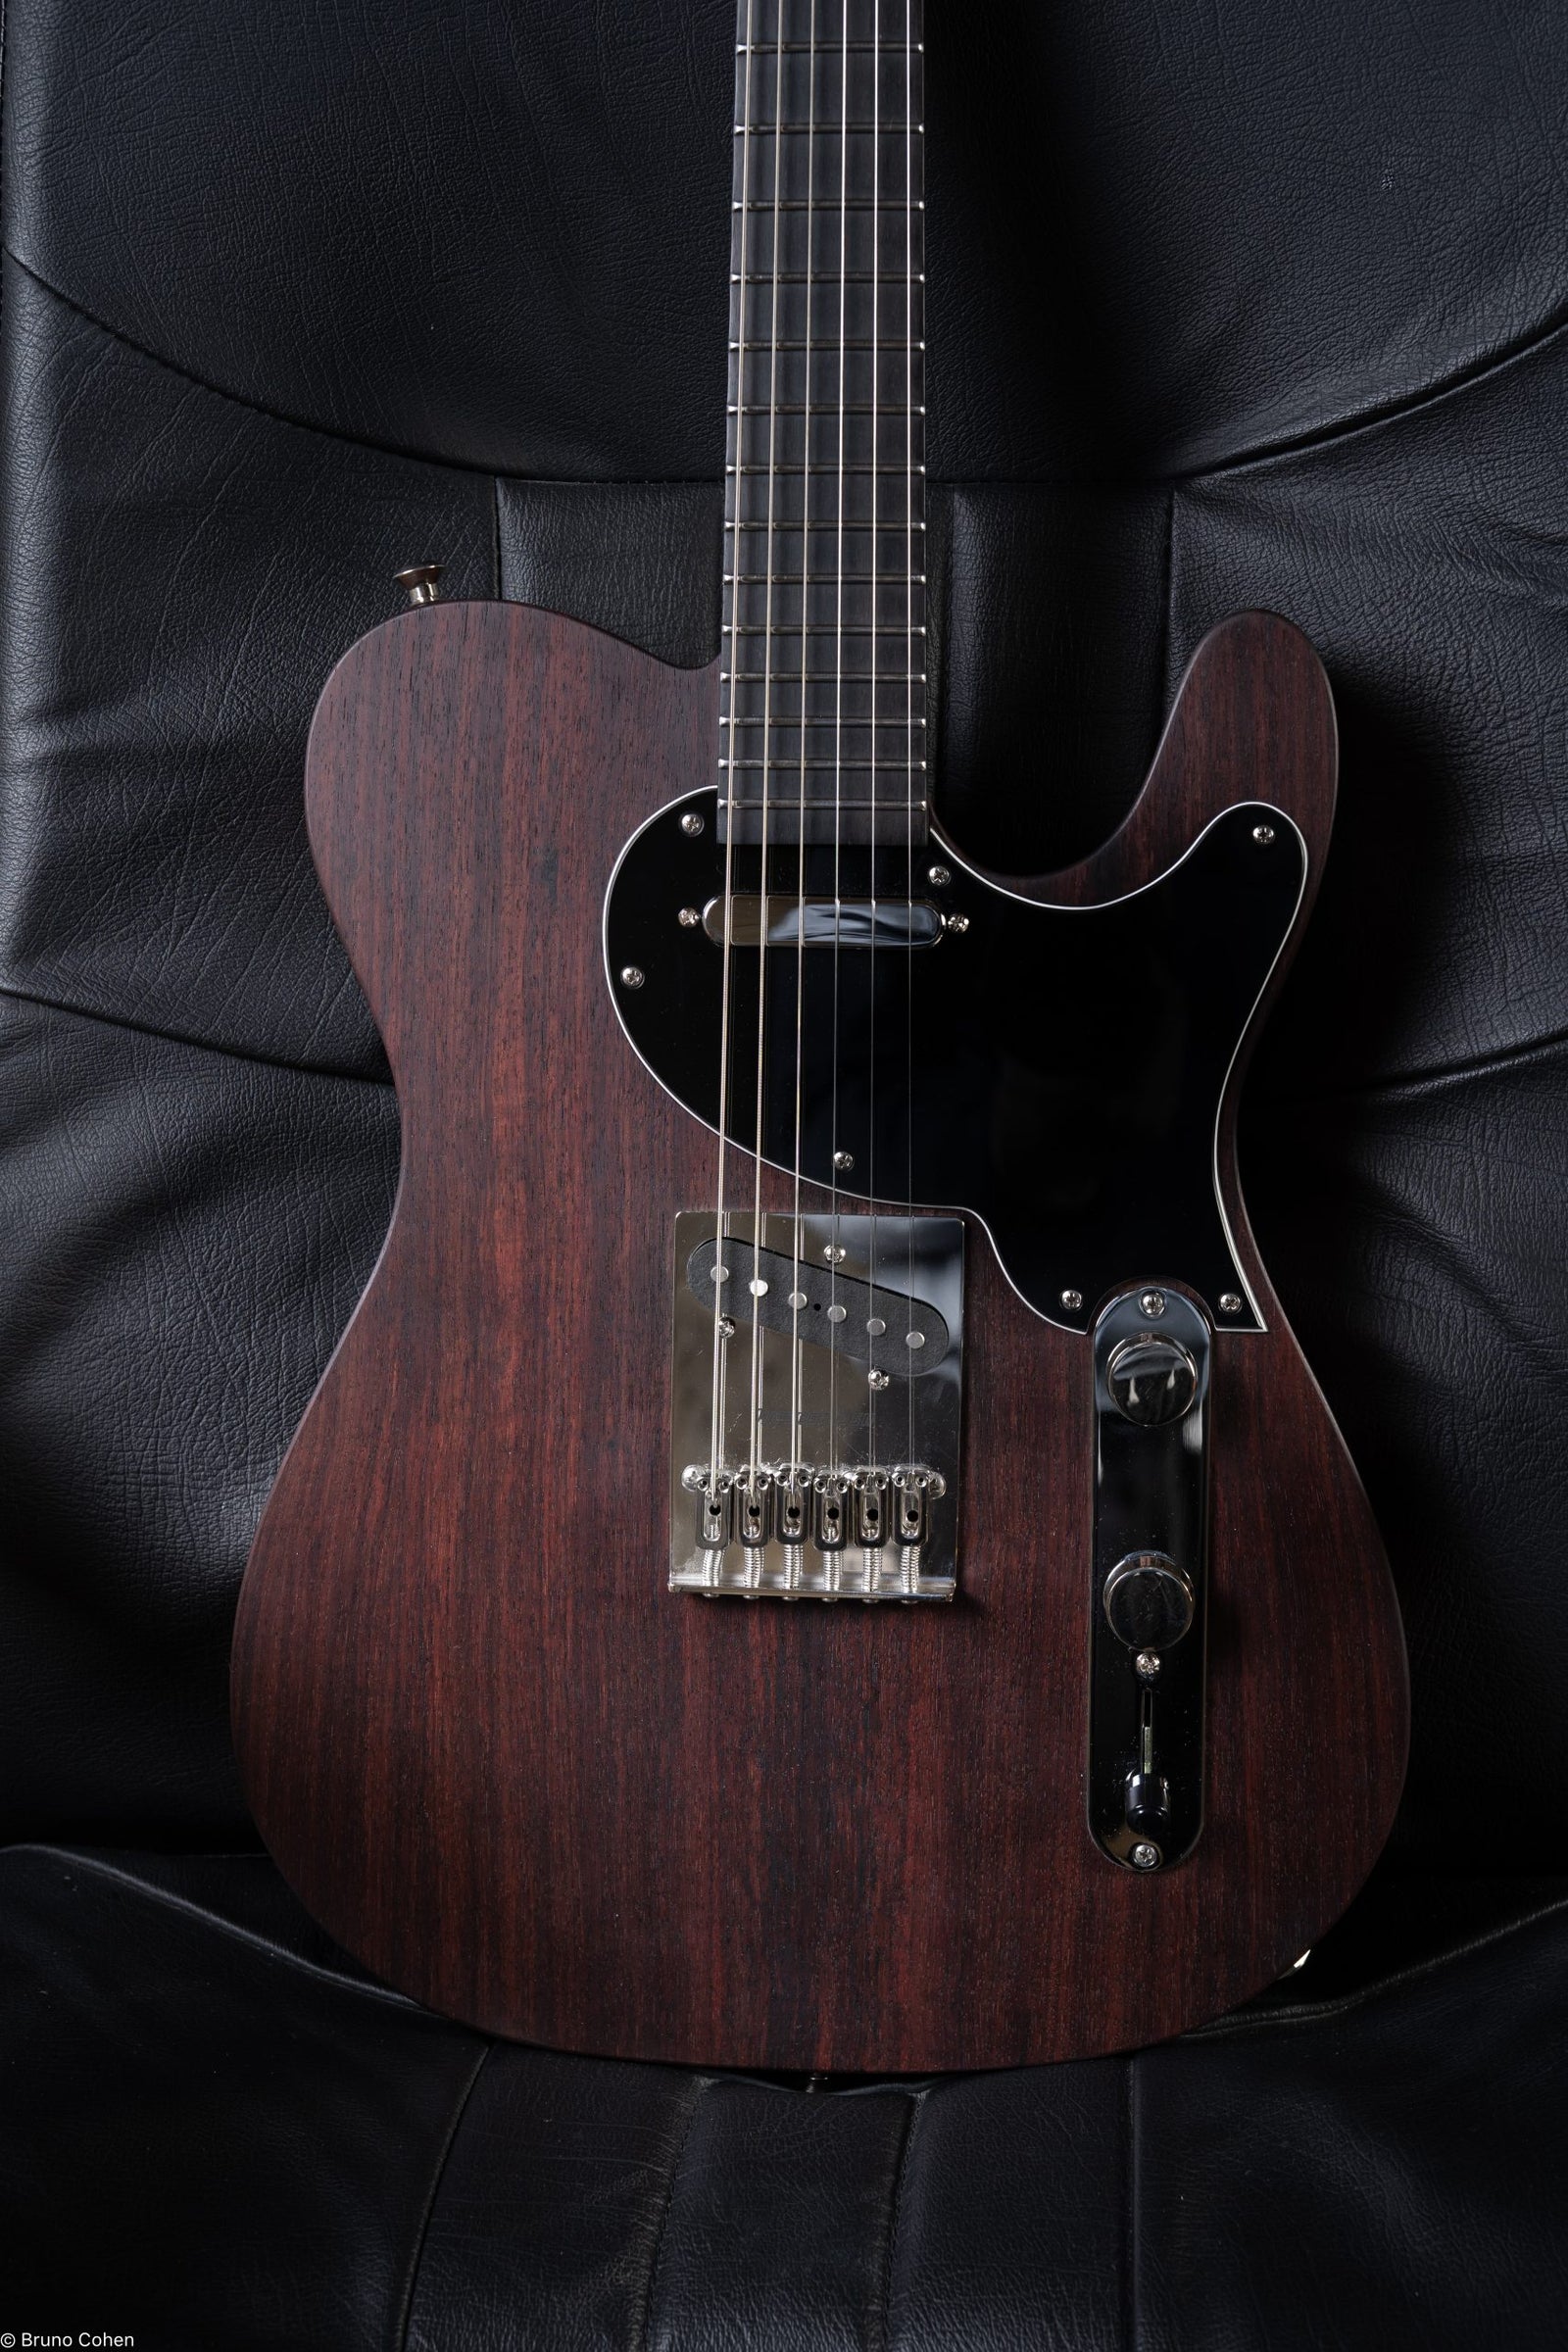 Details d'une guitare SY à manche traversant de la marque de lutherie française De Leeuw Guitars. Guitare Made in France - Guitar Made in France